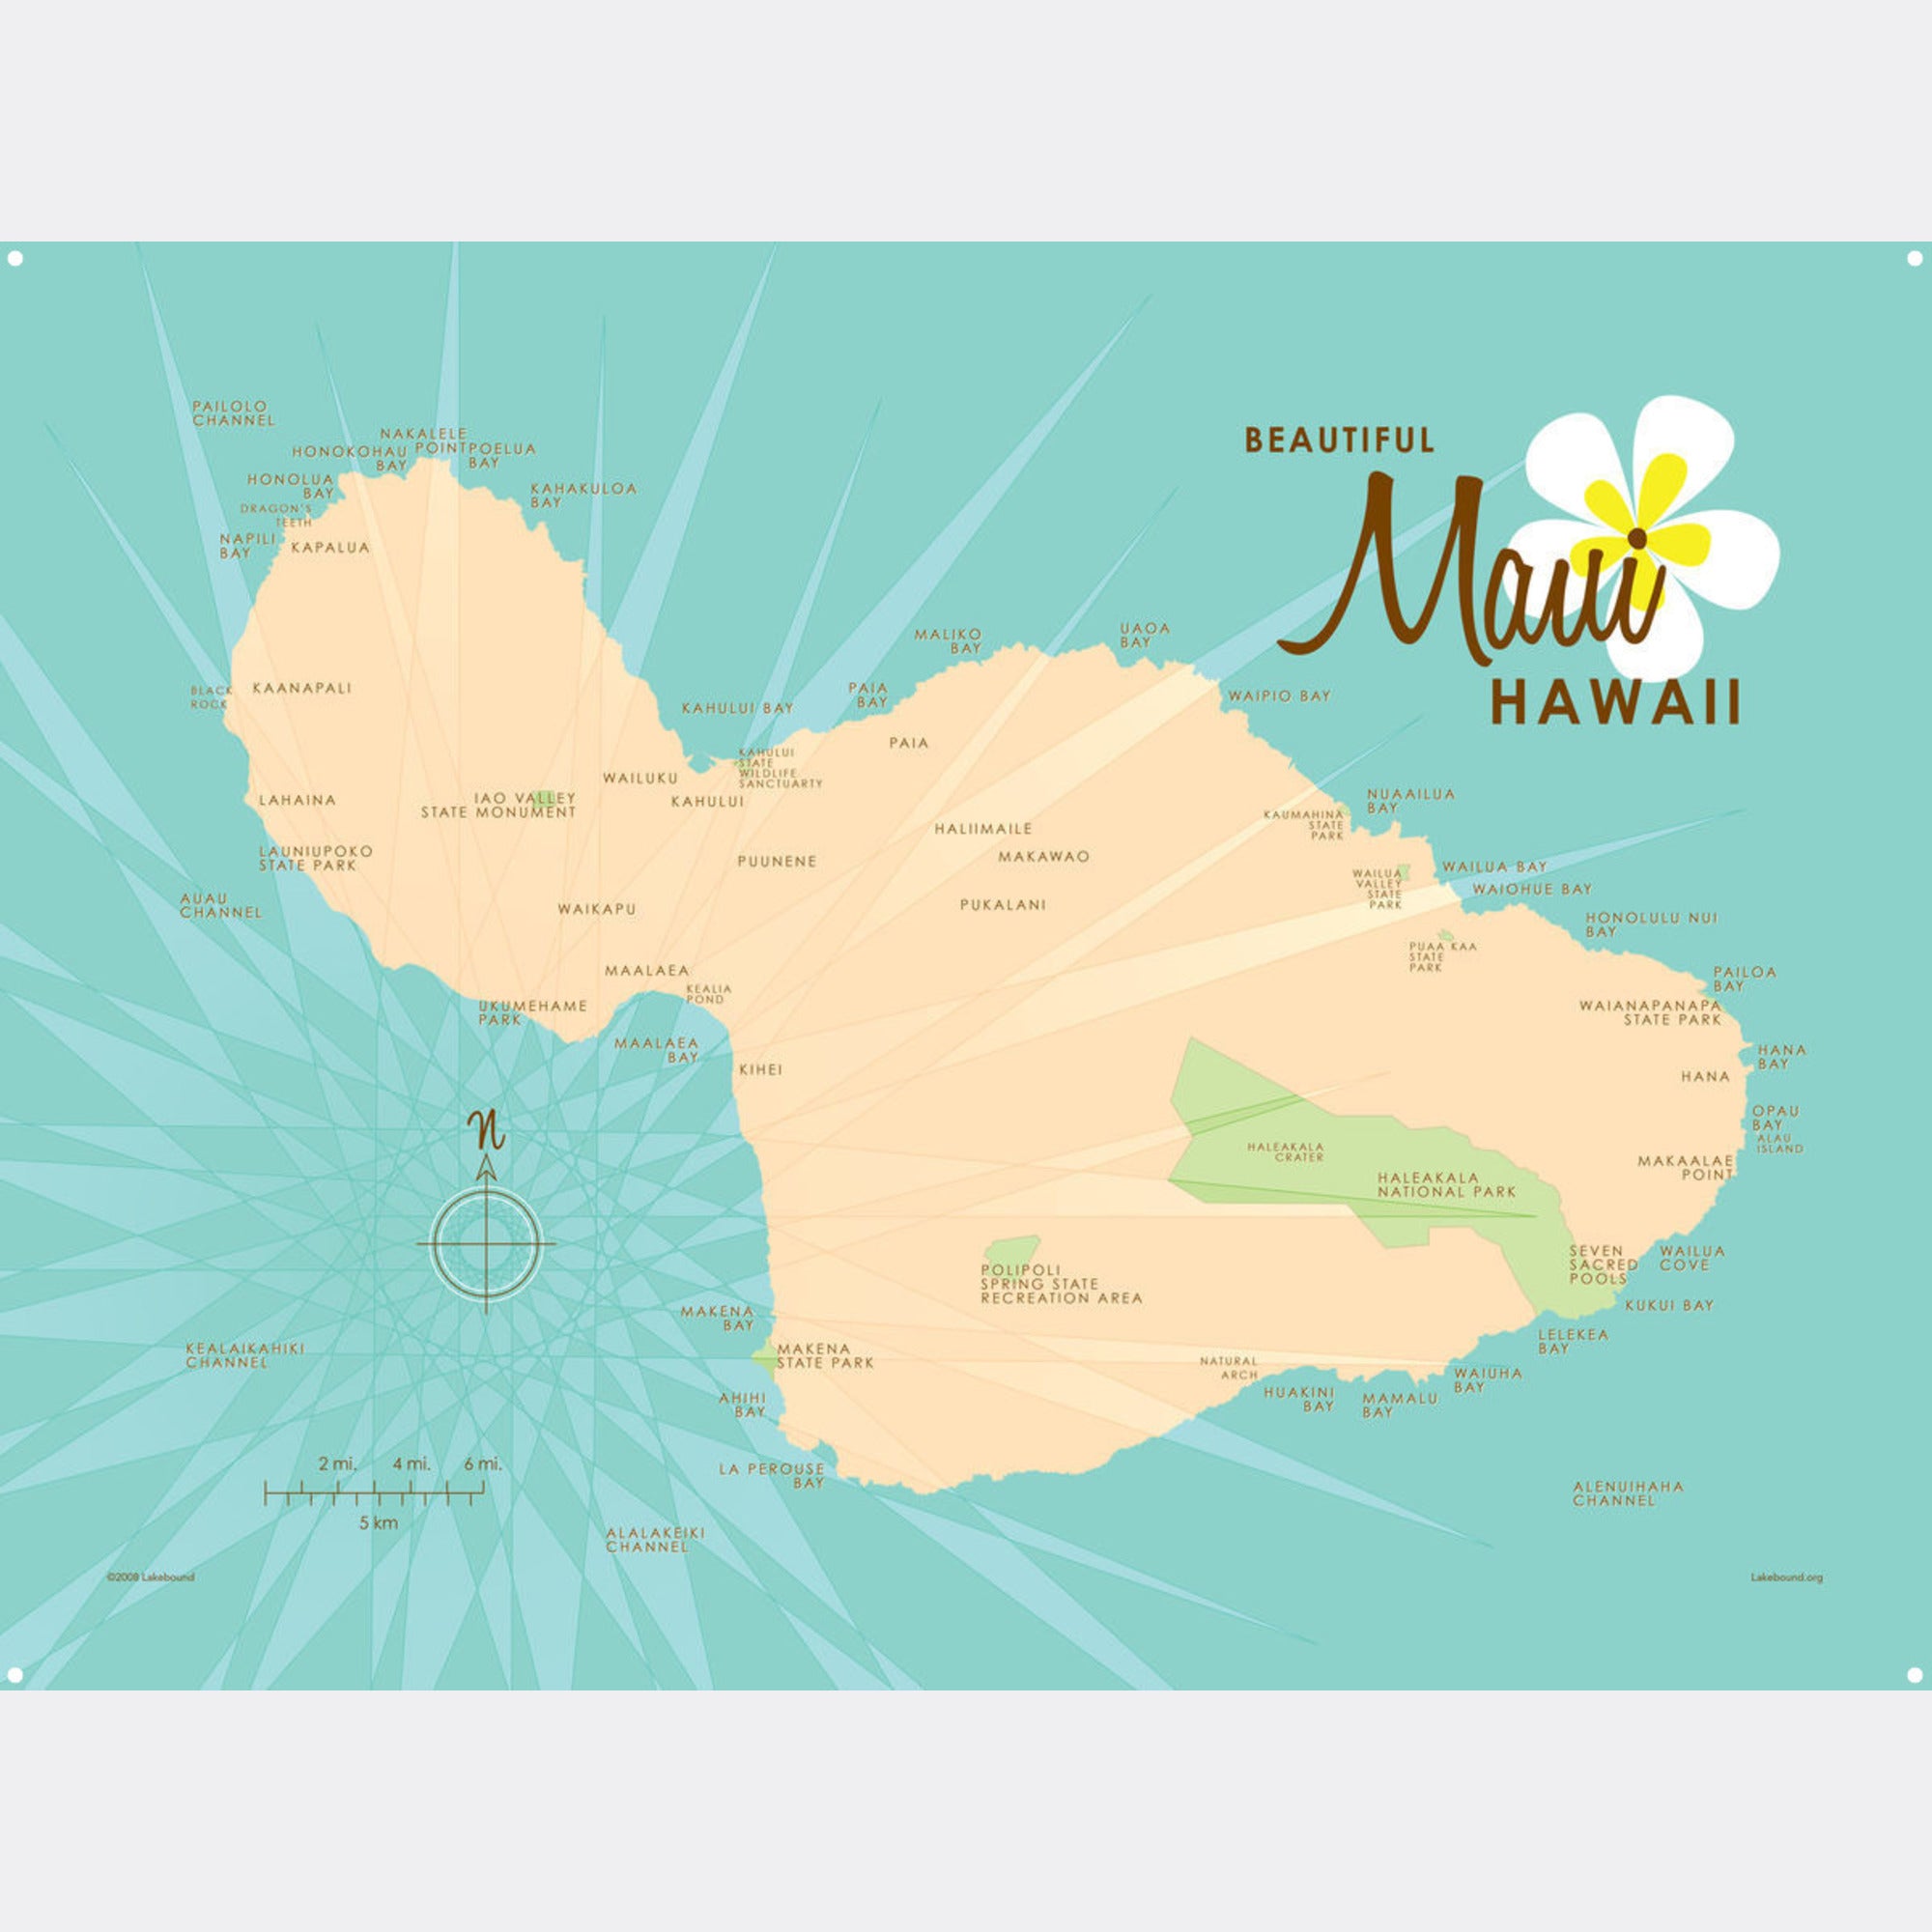 Maui Hawaii, Metal Sign Map Art